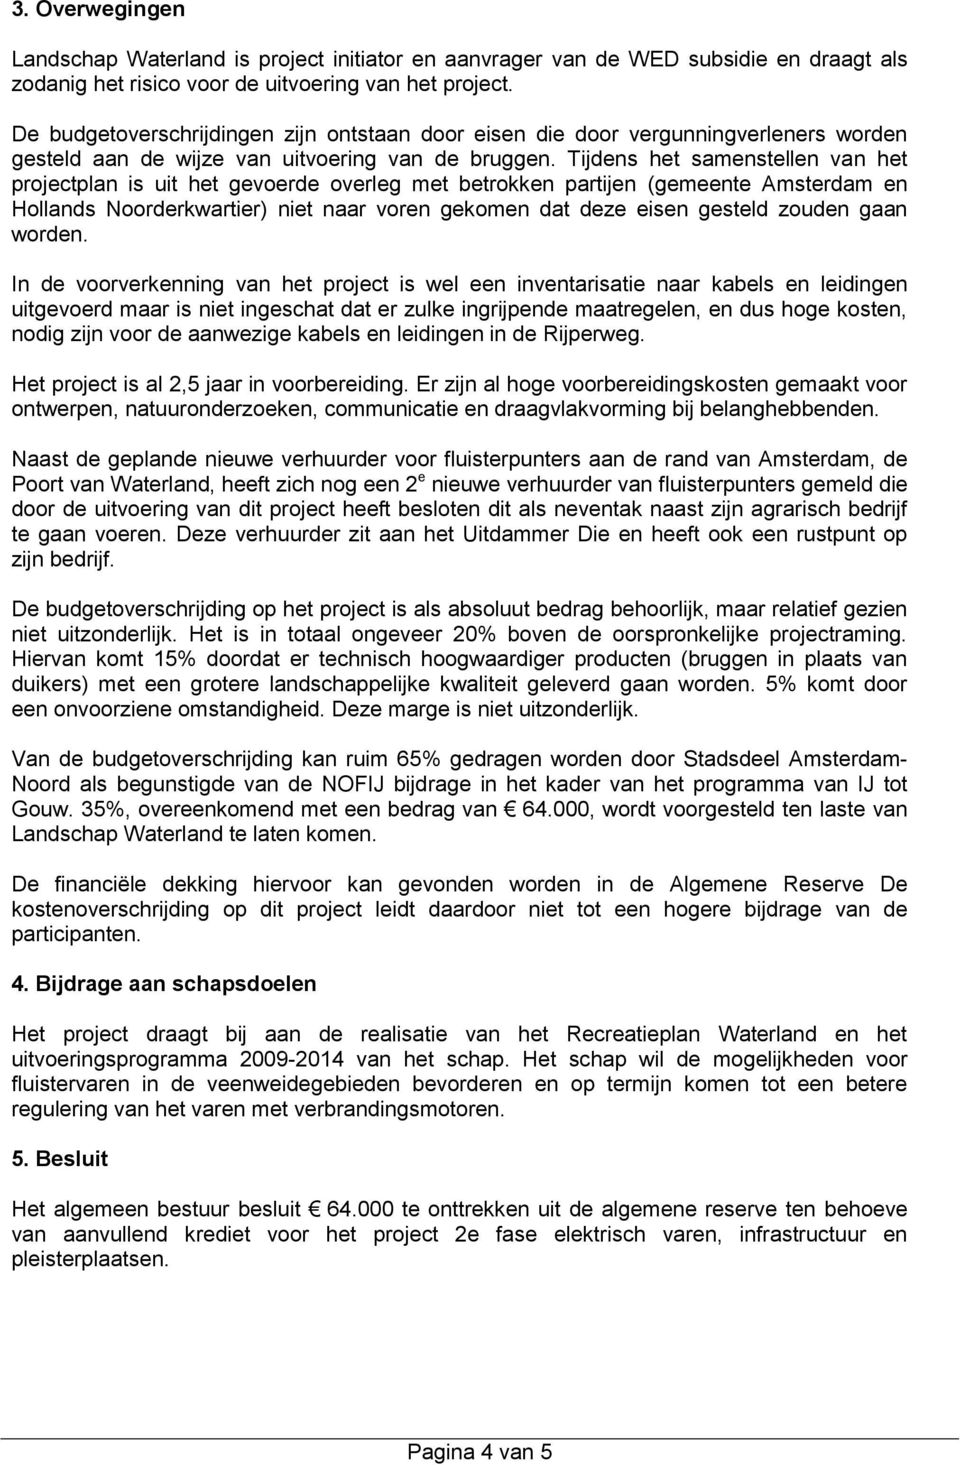 Tijdens het samenstellen van het projectplan is uit het gevoerde overleg met betrokken partijen (gemeente Amsterdam en Hollands Noorderkwartier) niet naar voren gekomen dat deze eisen gesteld zouden